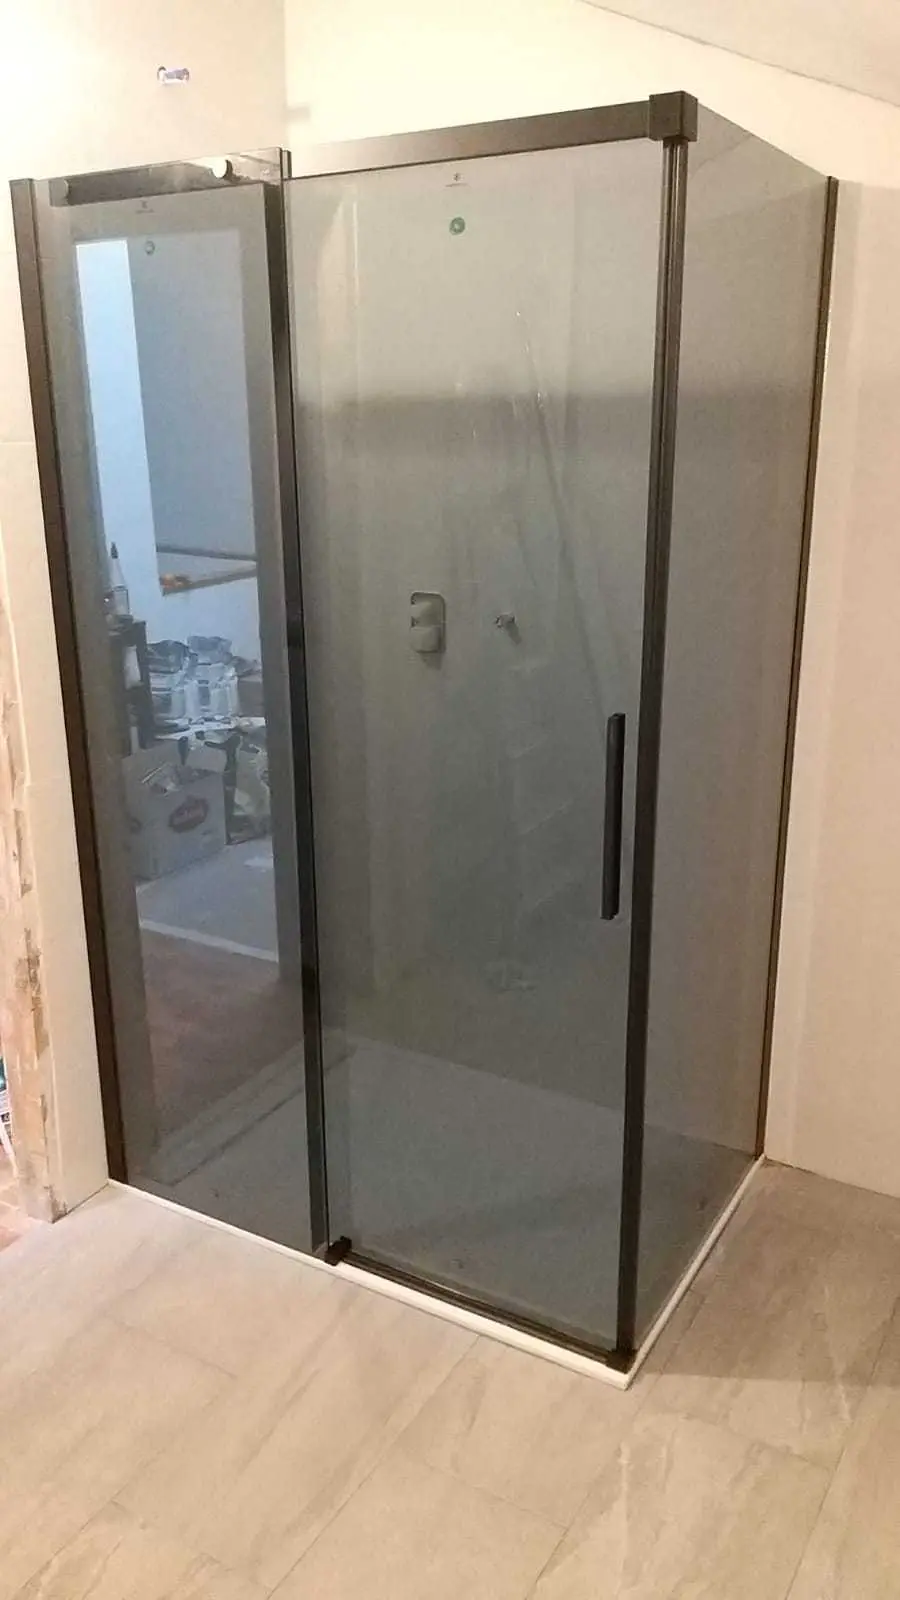 Vierteaguas inferior para puerta de mampara y baño con vidrio de 5, 6 y 8 mm